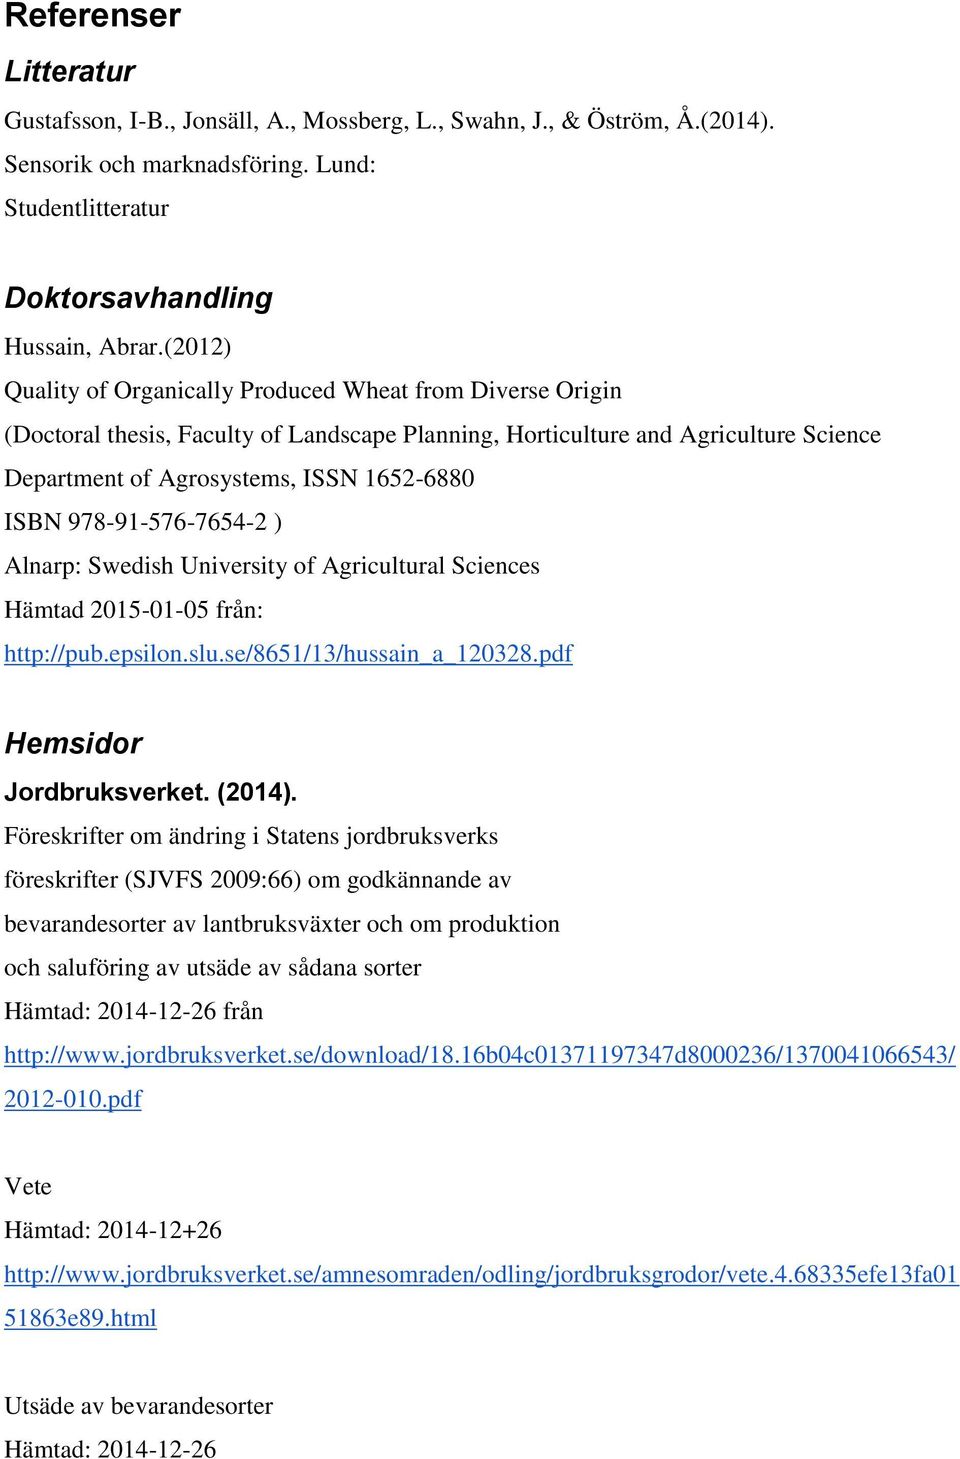 978-91-576-7654-2 ) Alnarp: Swedish University of Agricultural Sciences Hämtad 2015-01-05 från: http://pub.epsilon.slu.se/8651/13/hussain_a_120328.pdf Hemsidor Jordbruksverket. (2014).